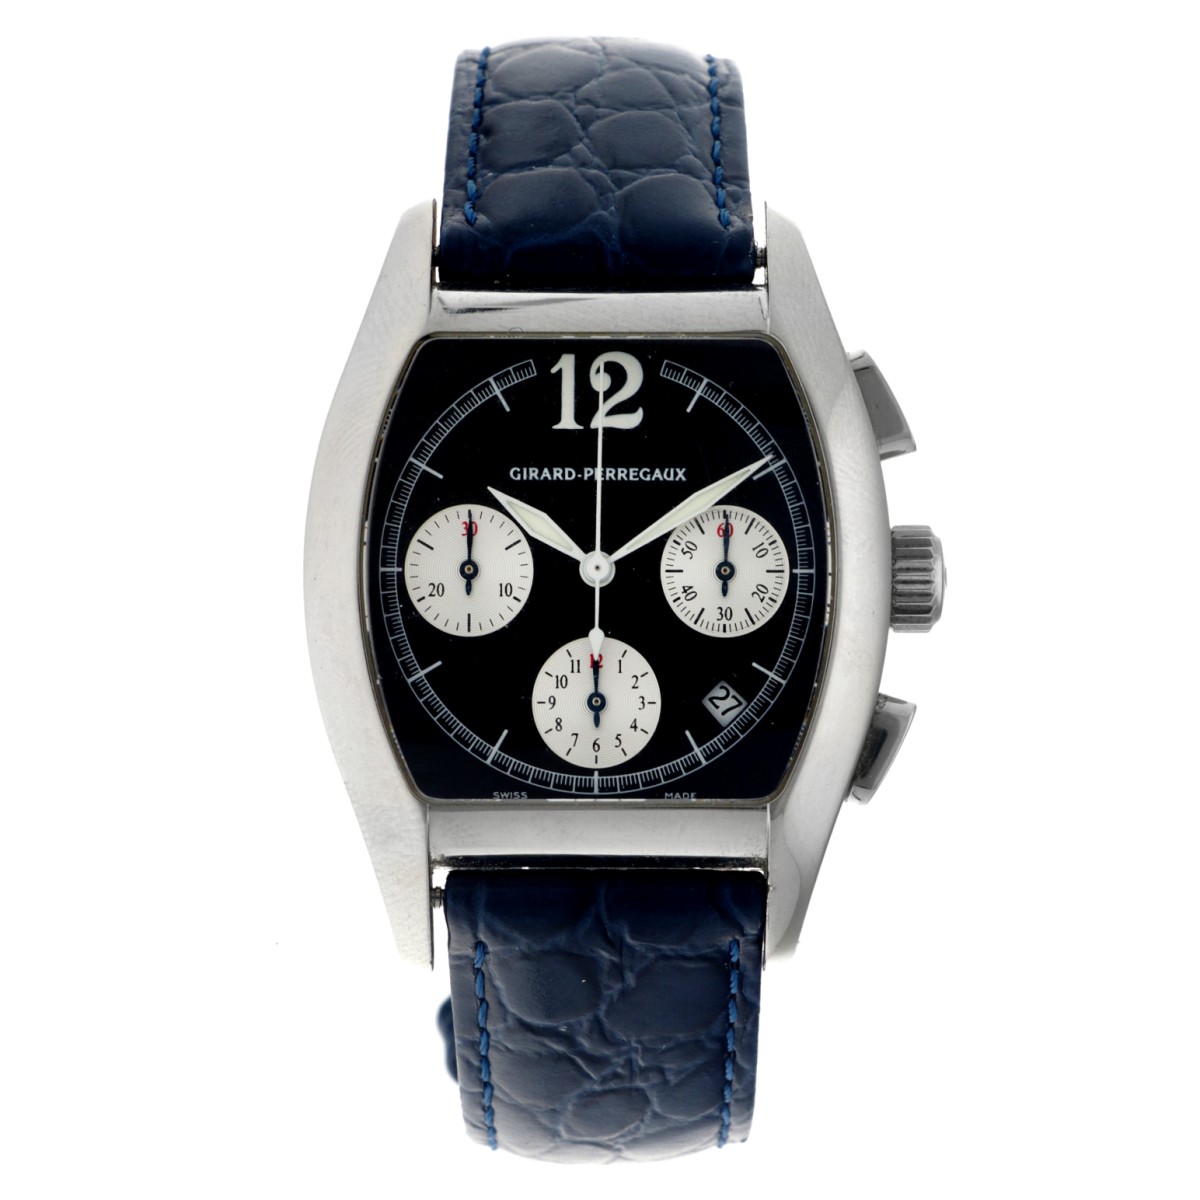 Girard-Perregaux Richeville 2765 - Heren horloge. 